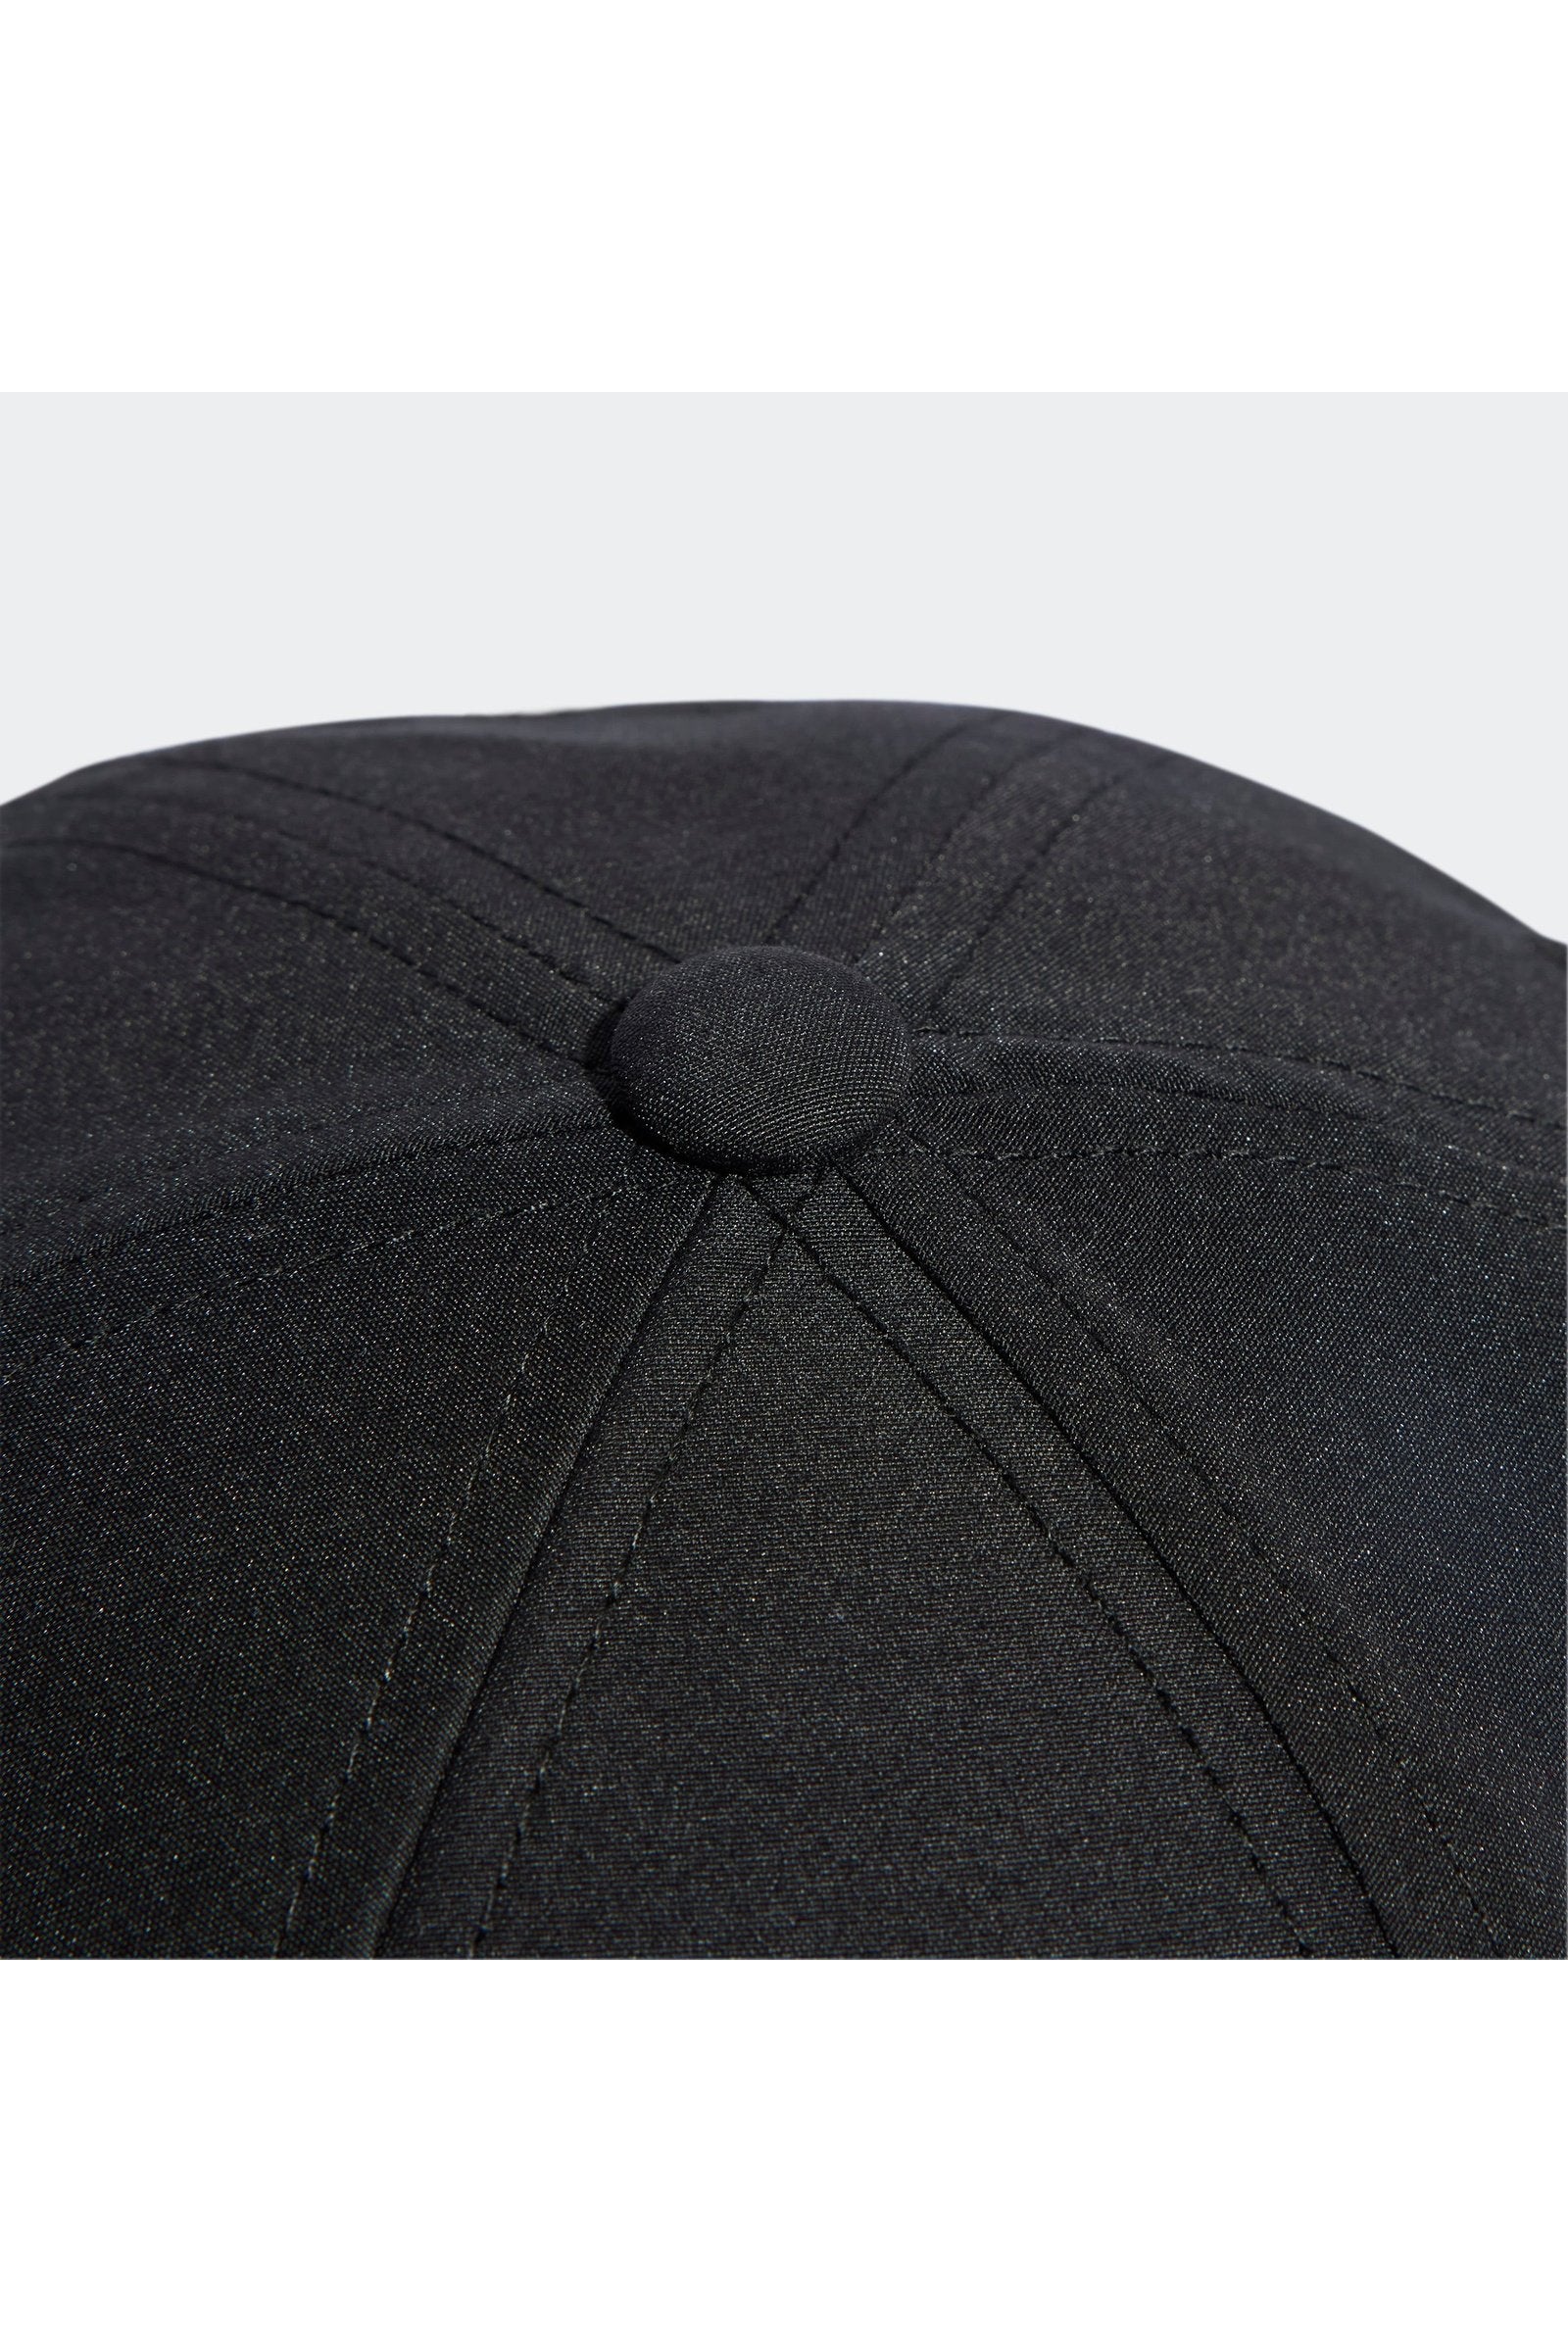 כובע RUNNING ESSENTIALS AEROREADY בצבע שחור וכסוף